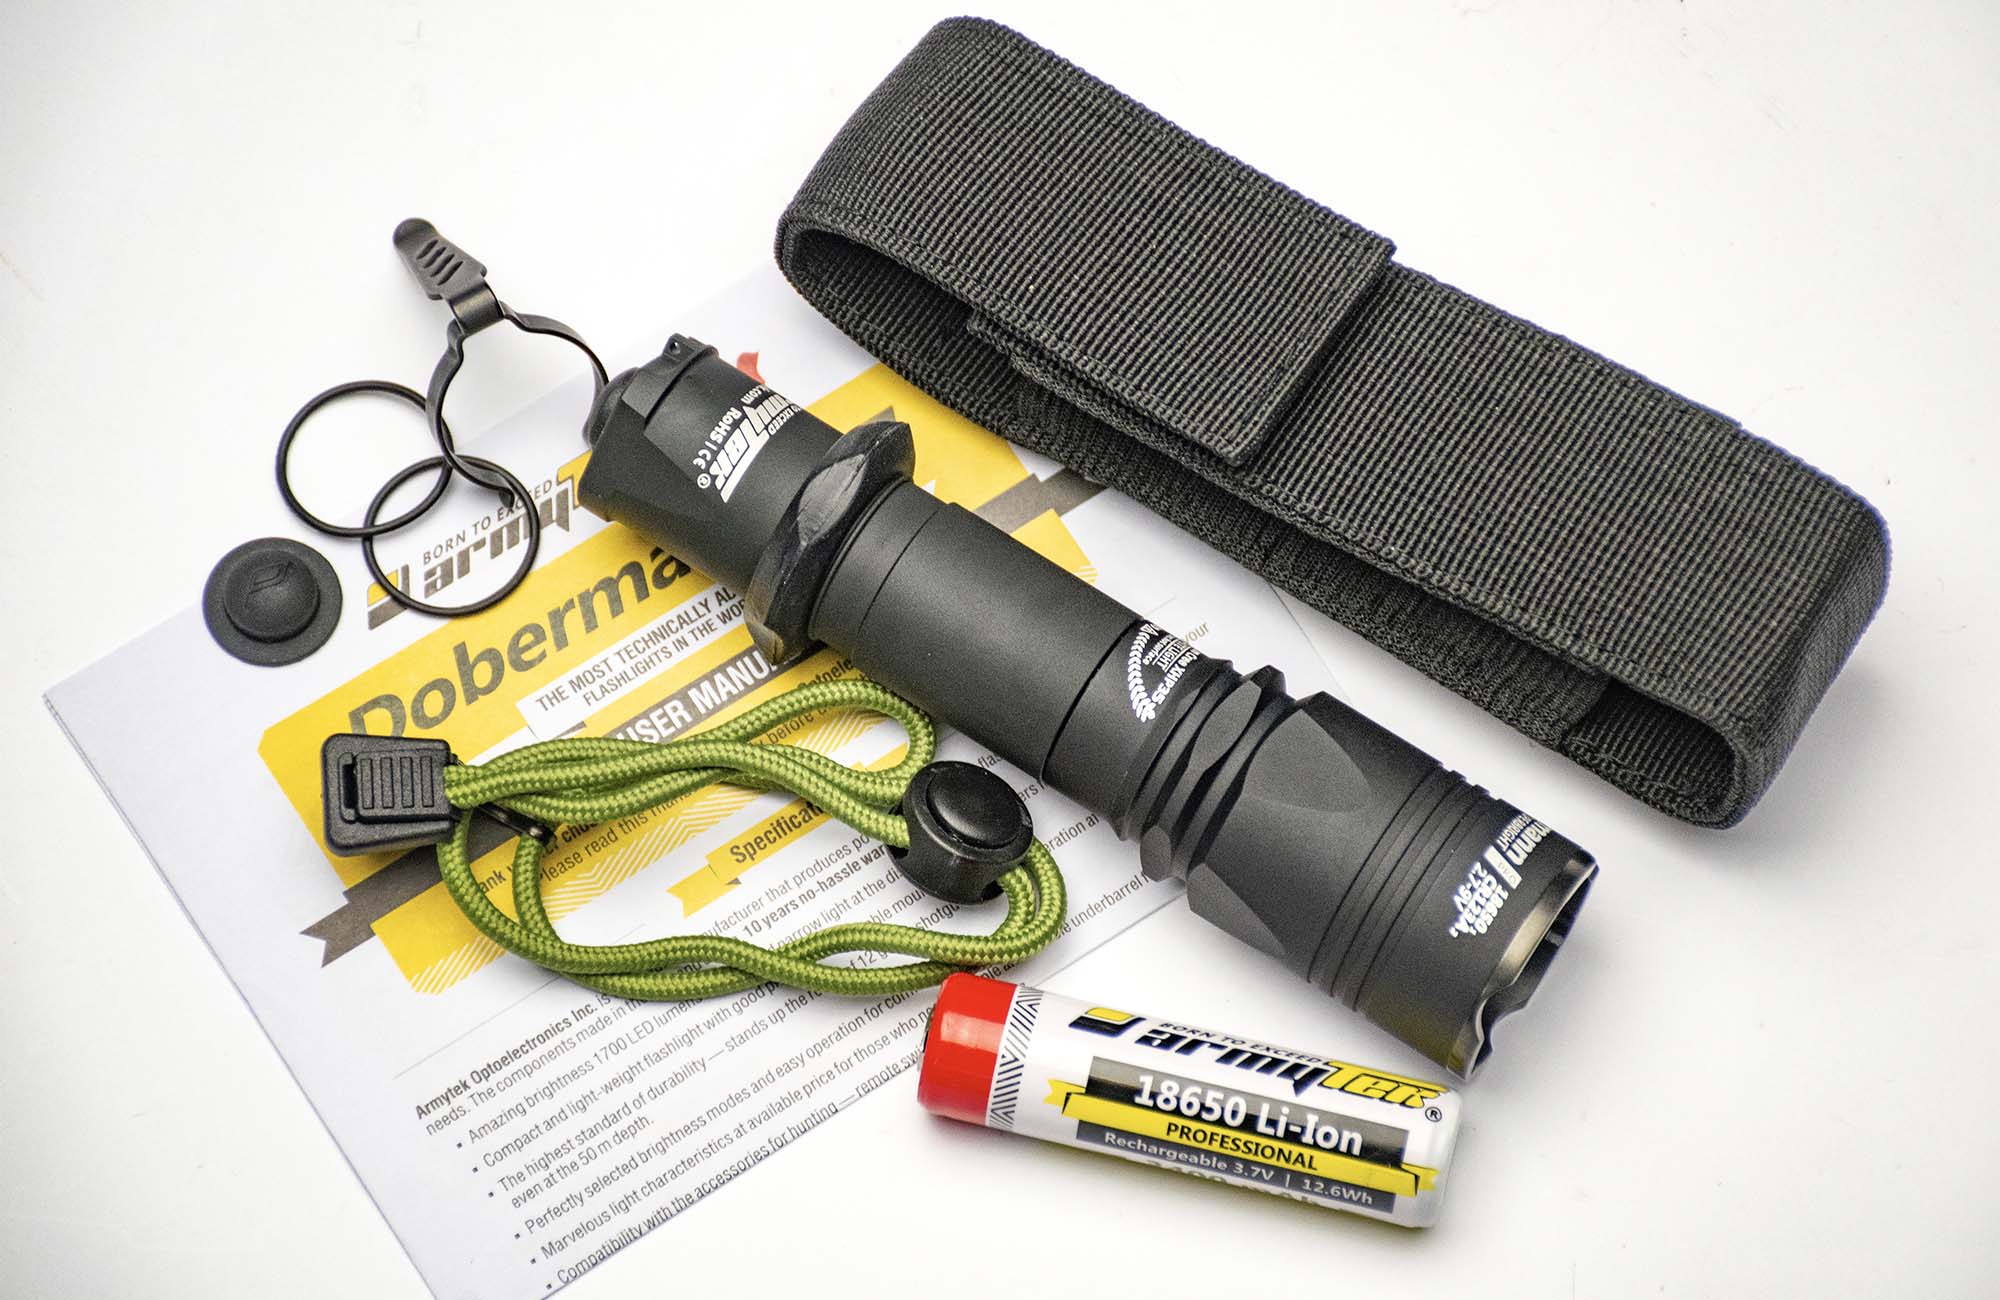 Armytek Dobermann Pro XHP35 HI flashlight